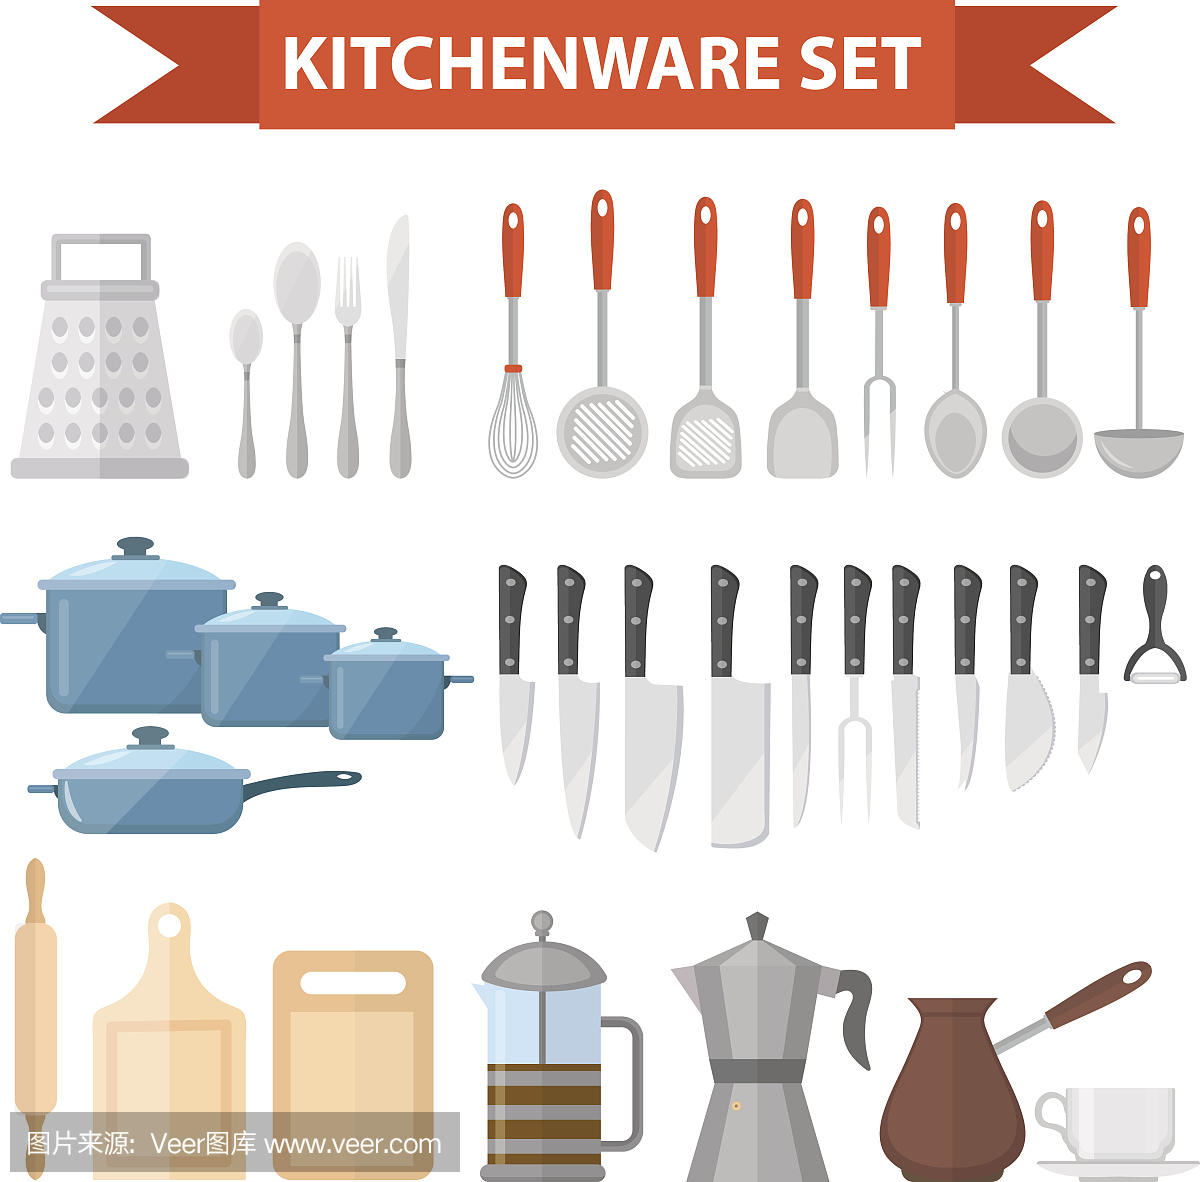 炊具设置图标,平面风格。厨房用具单独设置在白色背景上。烹饪工具及厨具设备。矢量图